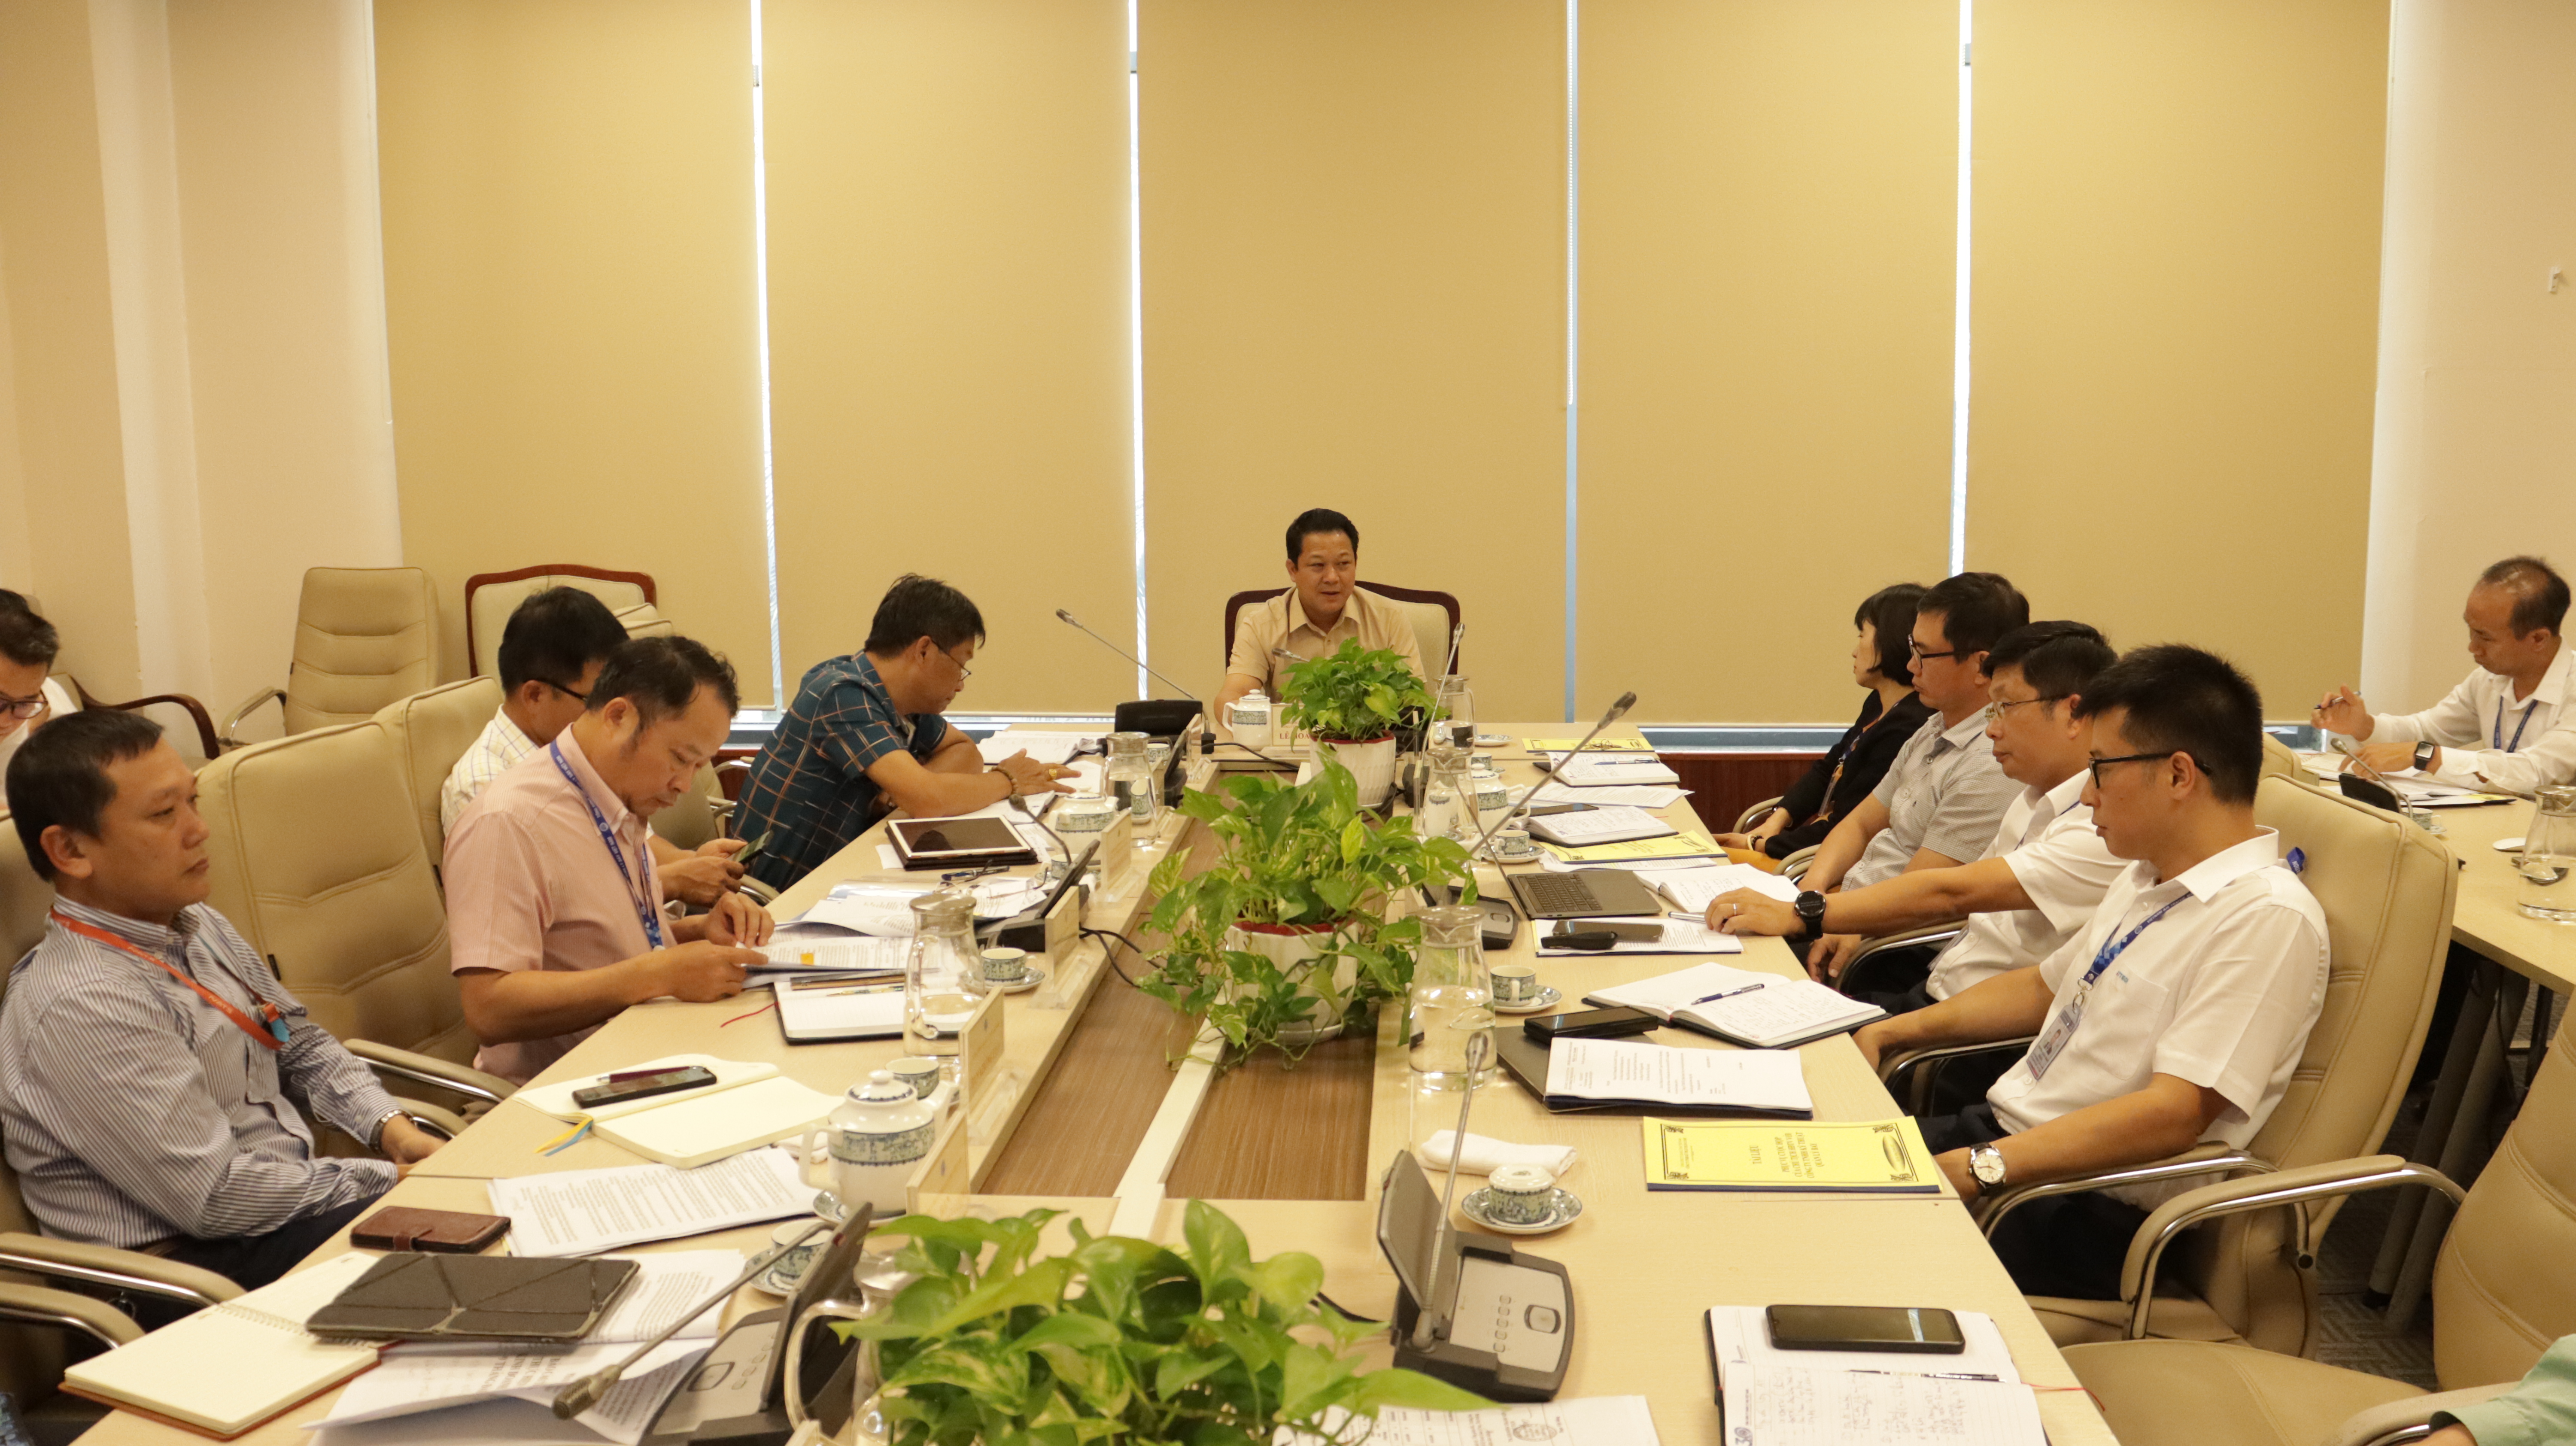 Chủ tịch Hội đồng thành viên Lê Hoàng Minh làm việc với Công ty TNHH Kỹ thuật Quản lý bay